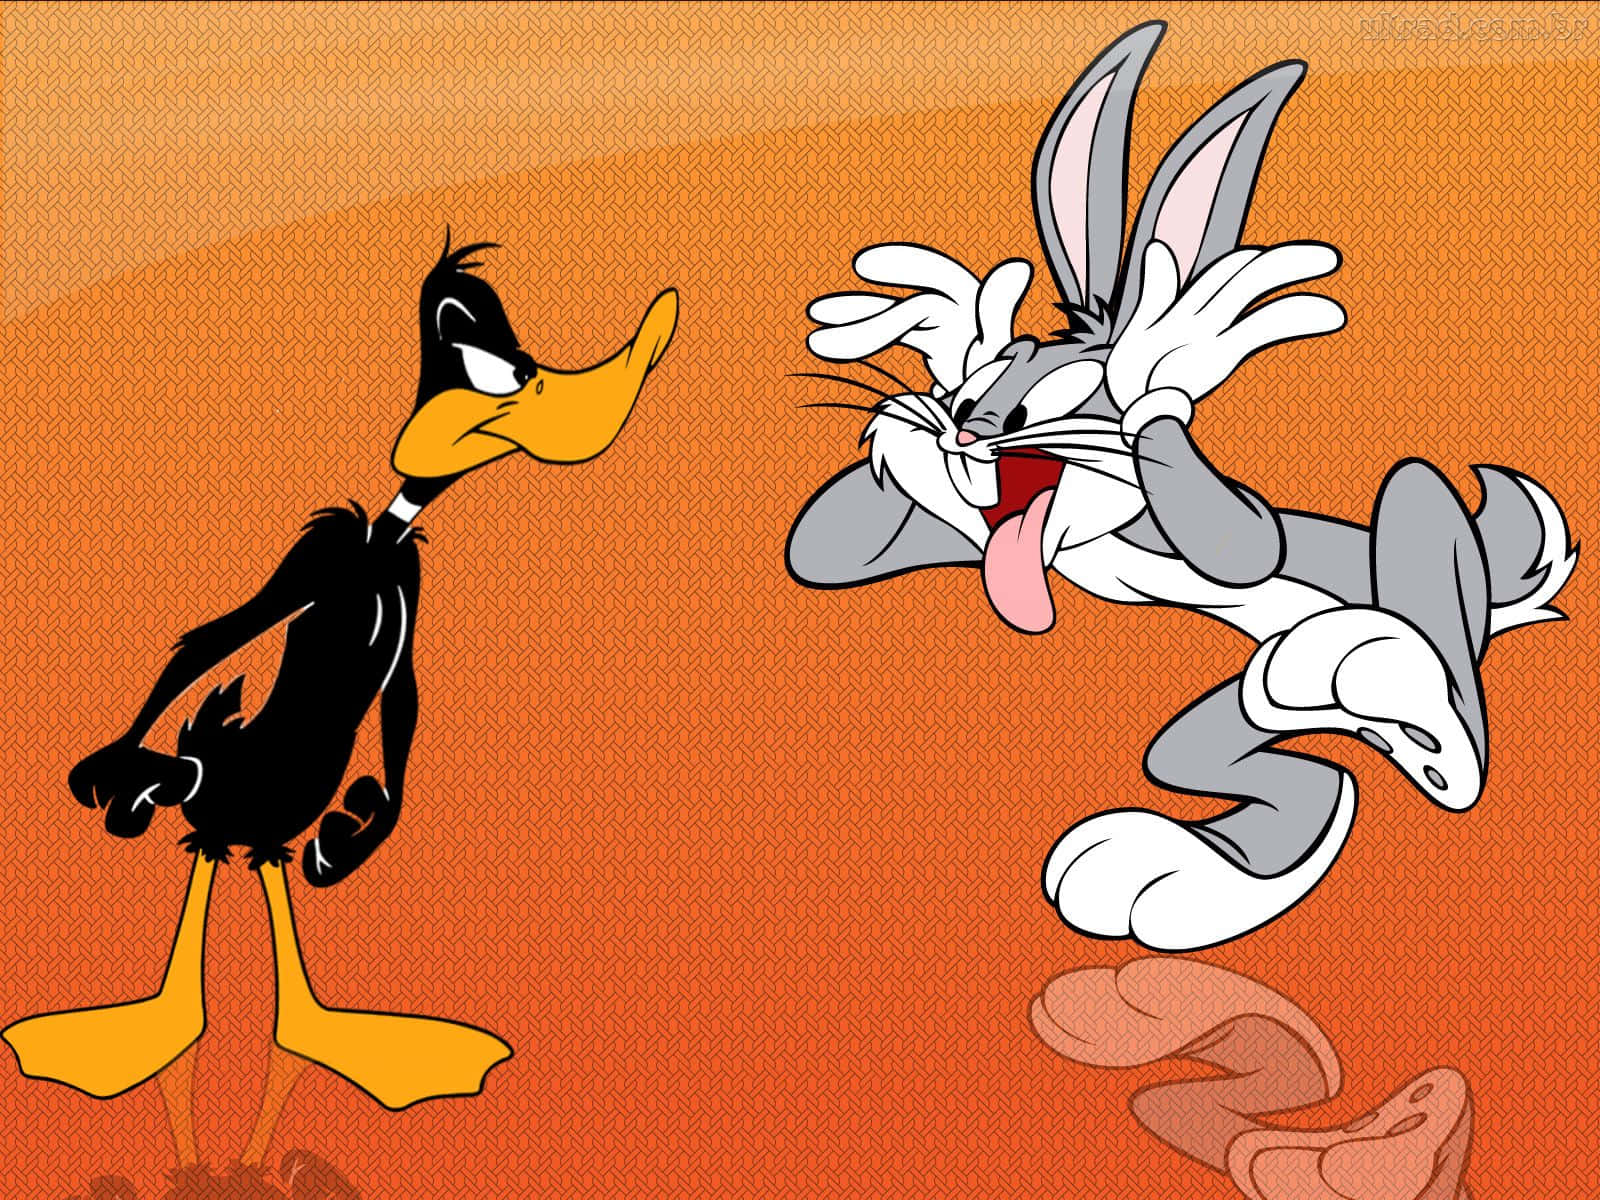 Clásicosdibujos Animados De Looney Tunes Con Bugs Bunny, Daffy Duck Y El Resto De La Pandilla.